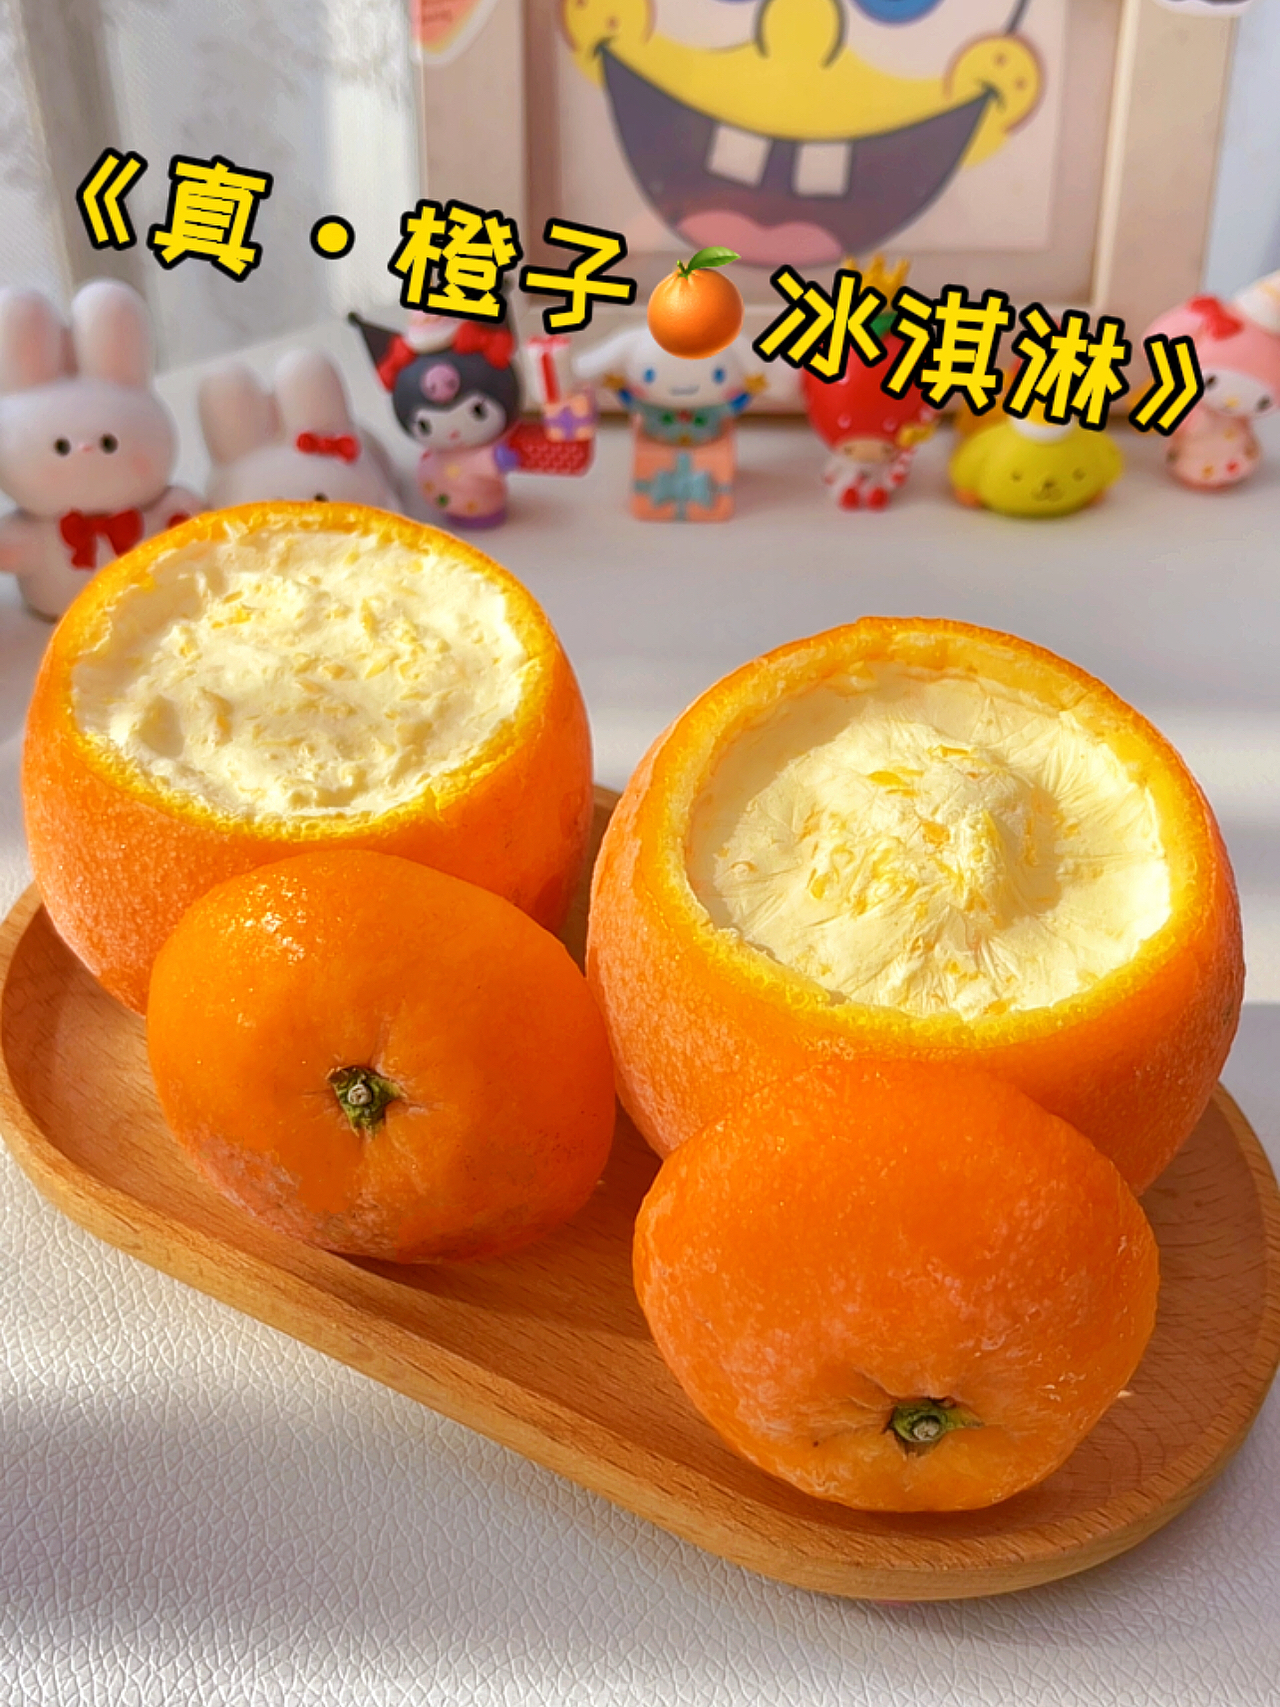 橙子神仙吃法❗️做成🍊冰淇淋太太太绝啦～